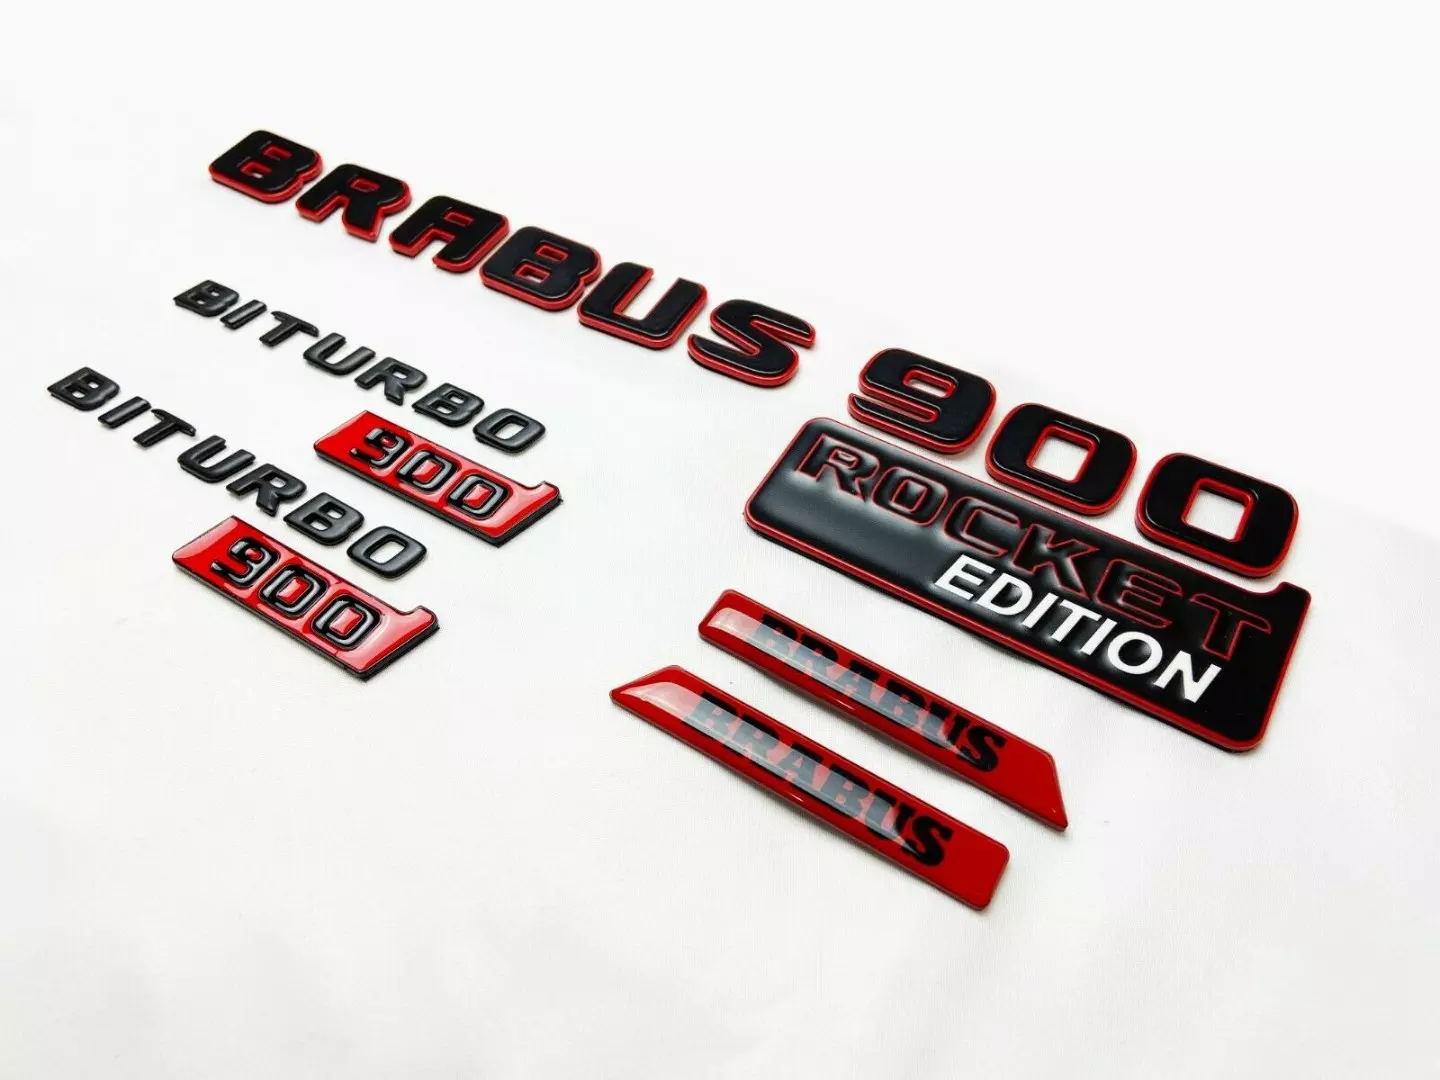 Mercedes Brabus Biturbo 900 Edition Metal Emblem Badges FULL Red Set ROCKET